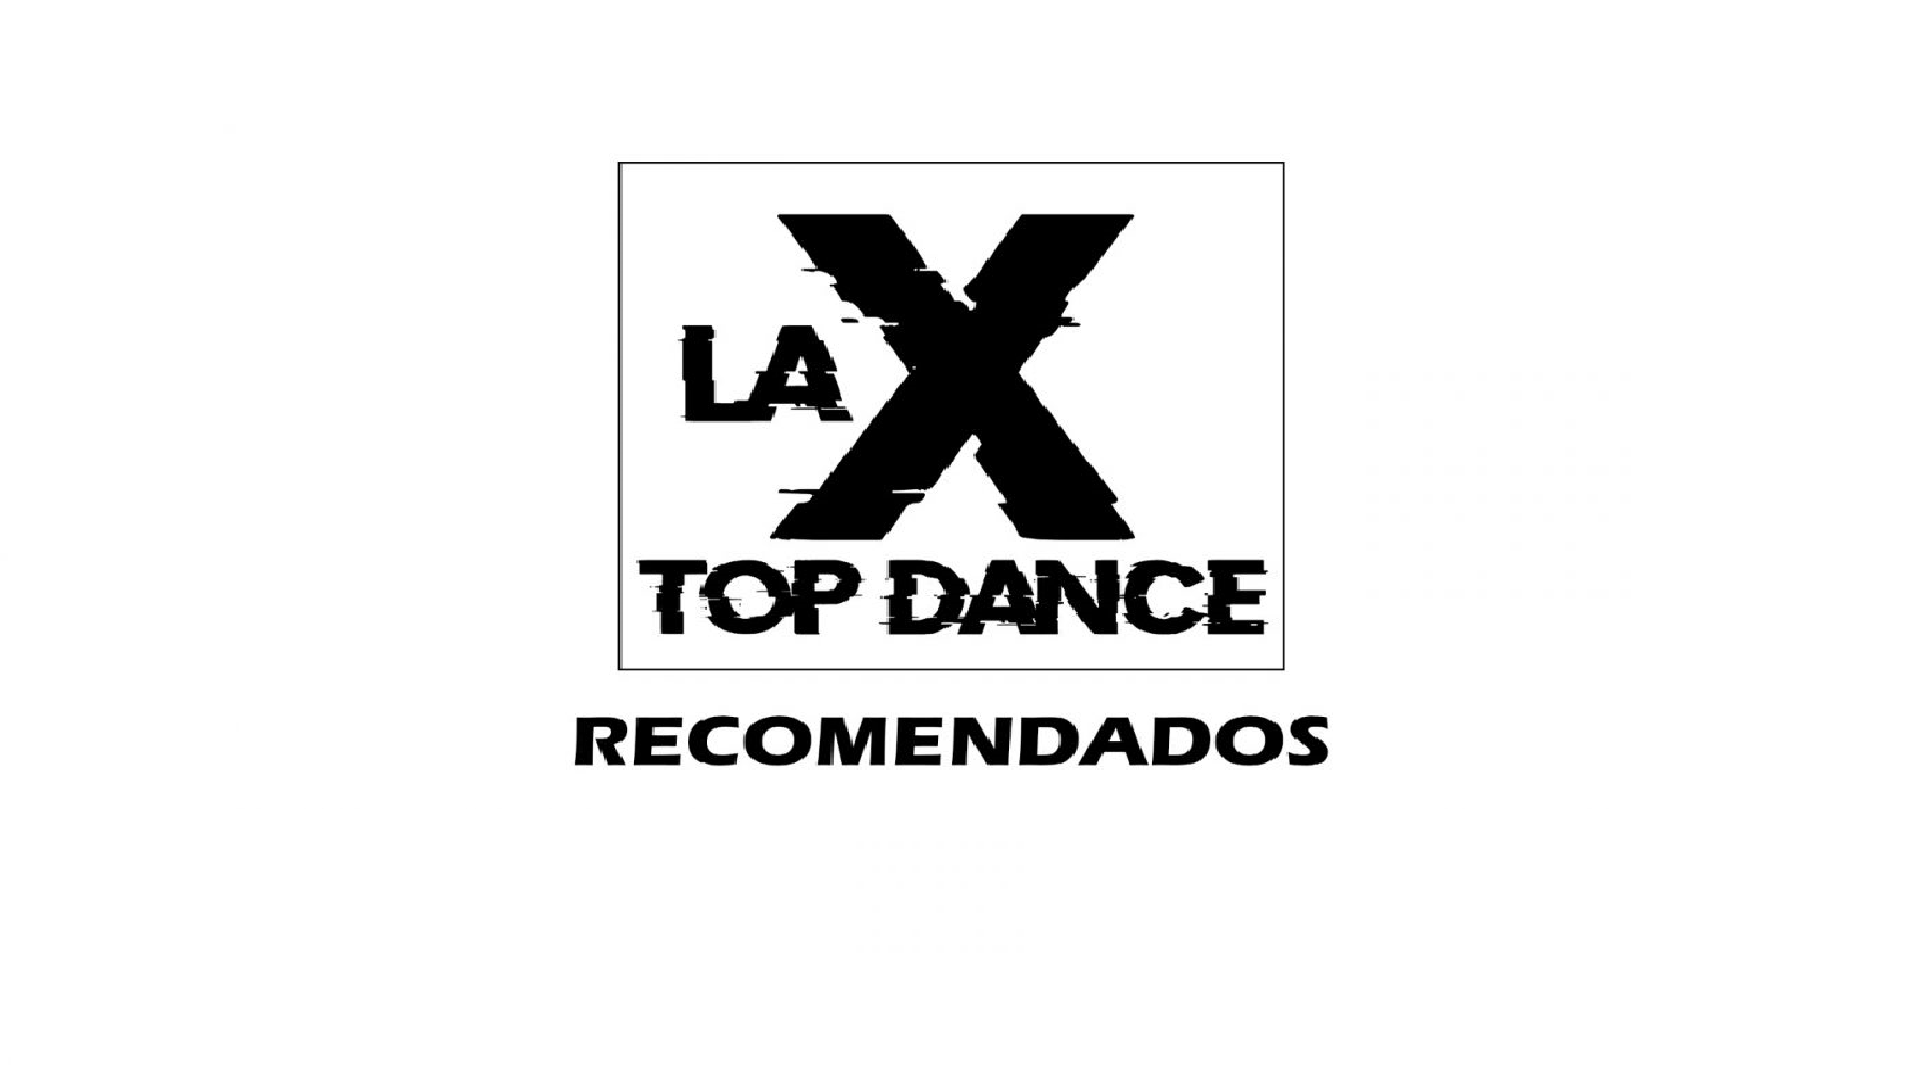 LA X TOP DANCE RECOMENDADOS AGOSTO 13